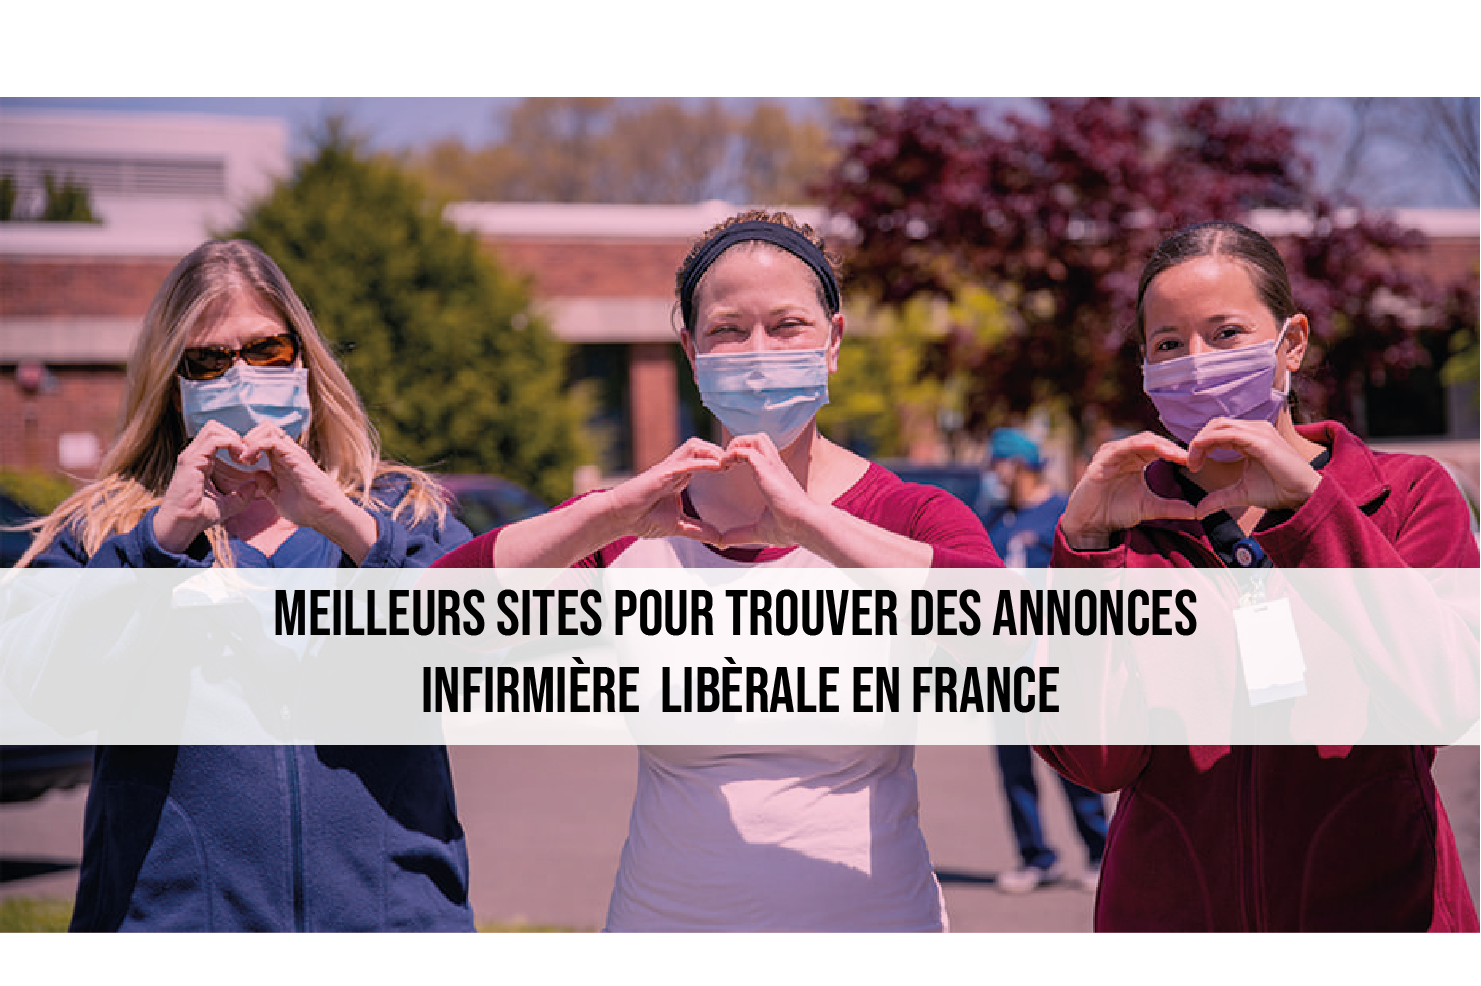 10 լավագույն կայքեր Ֆրանսիայում լիբերալ բուժքույրերի գովազդներ գտնելու համար